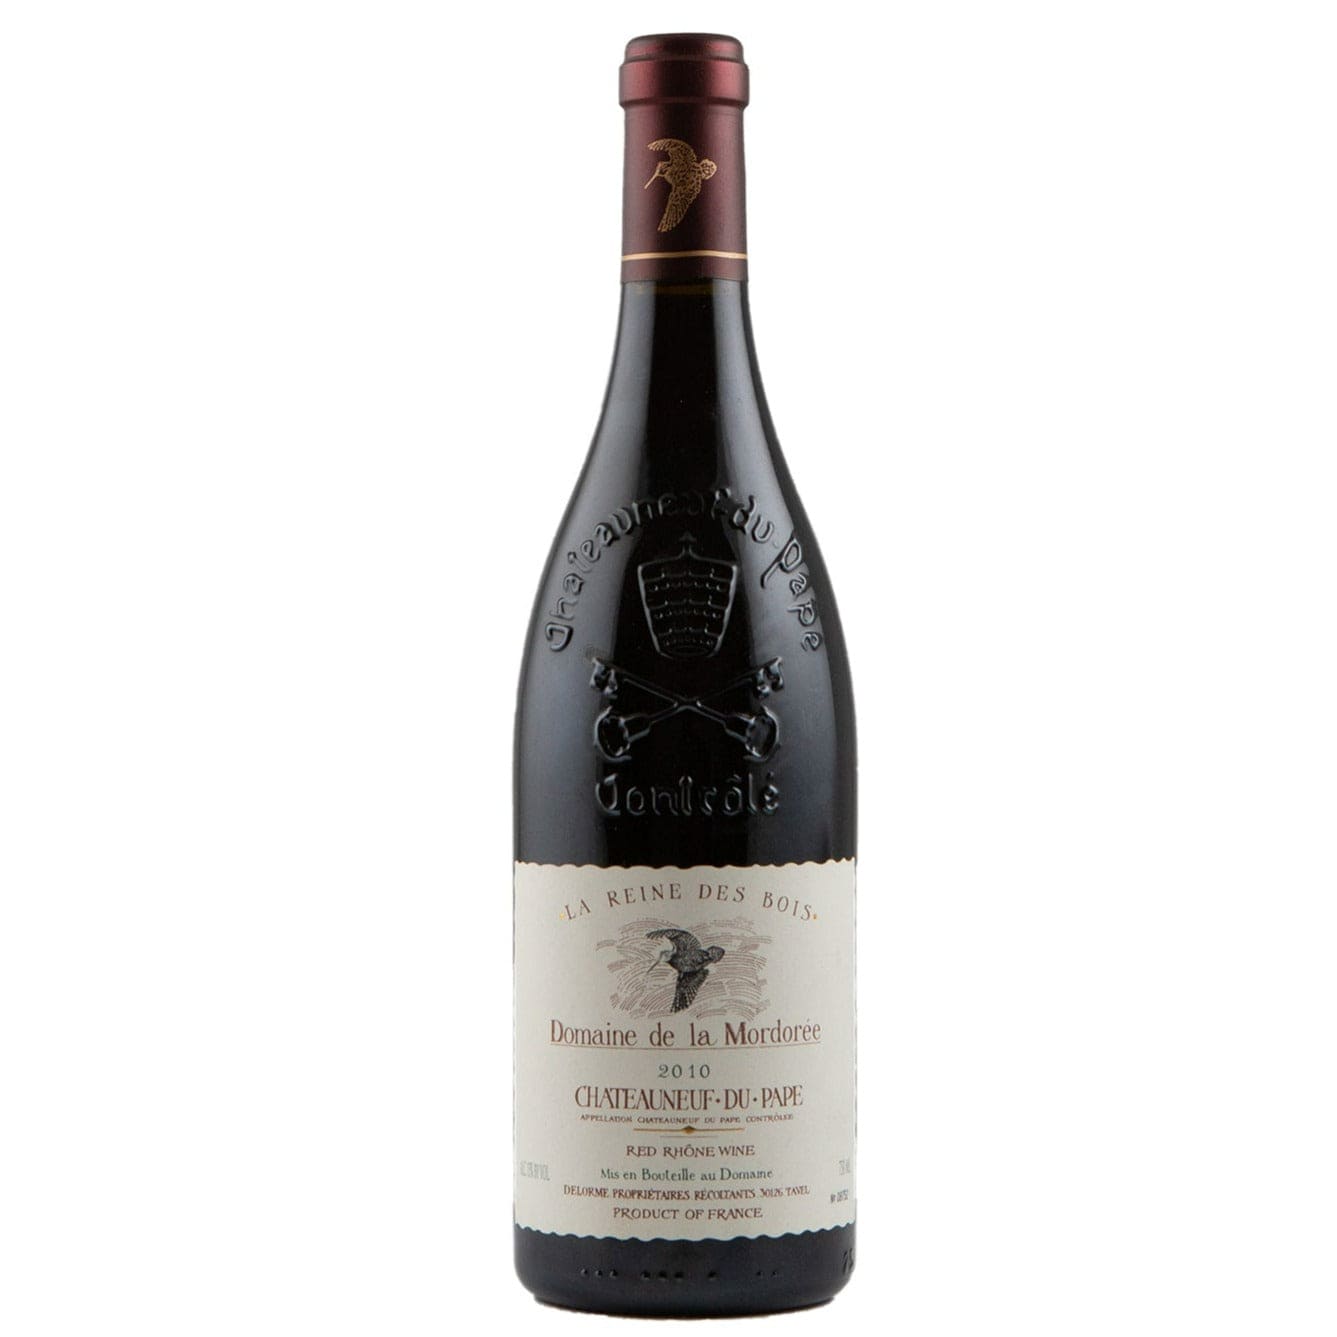 Single bottle of Red wine Domaine de la Mordorée, Cuvee La Reine des Bois, Chateauneuf du Pape, 2010 Syrah, Mourvedre & Grenache